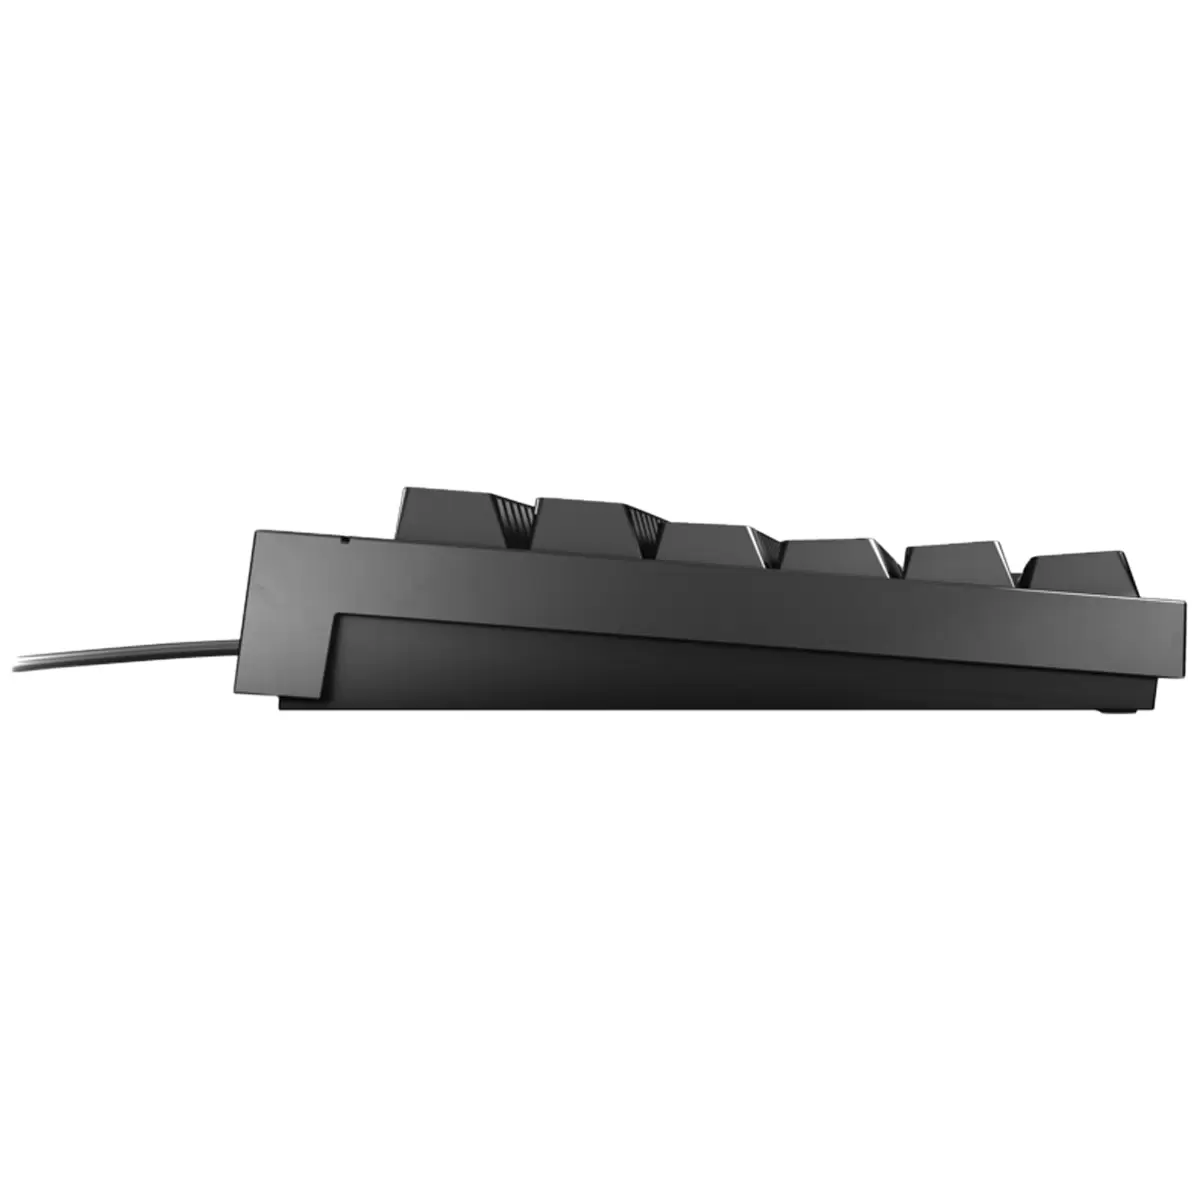 CHERRY MX 2.0S RGB Gaming Keyboard Black  G80-3821LYAEU-2